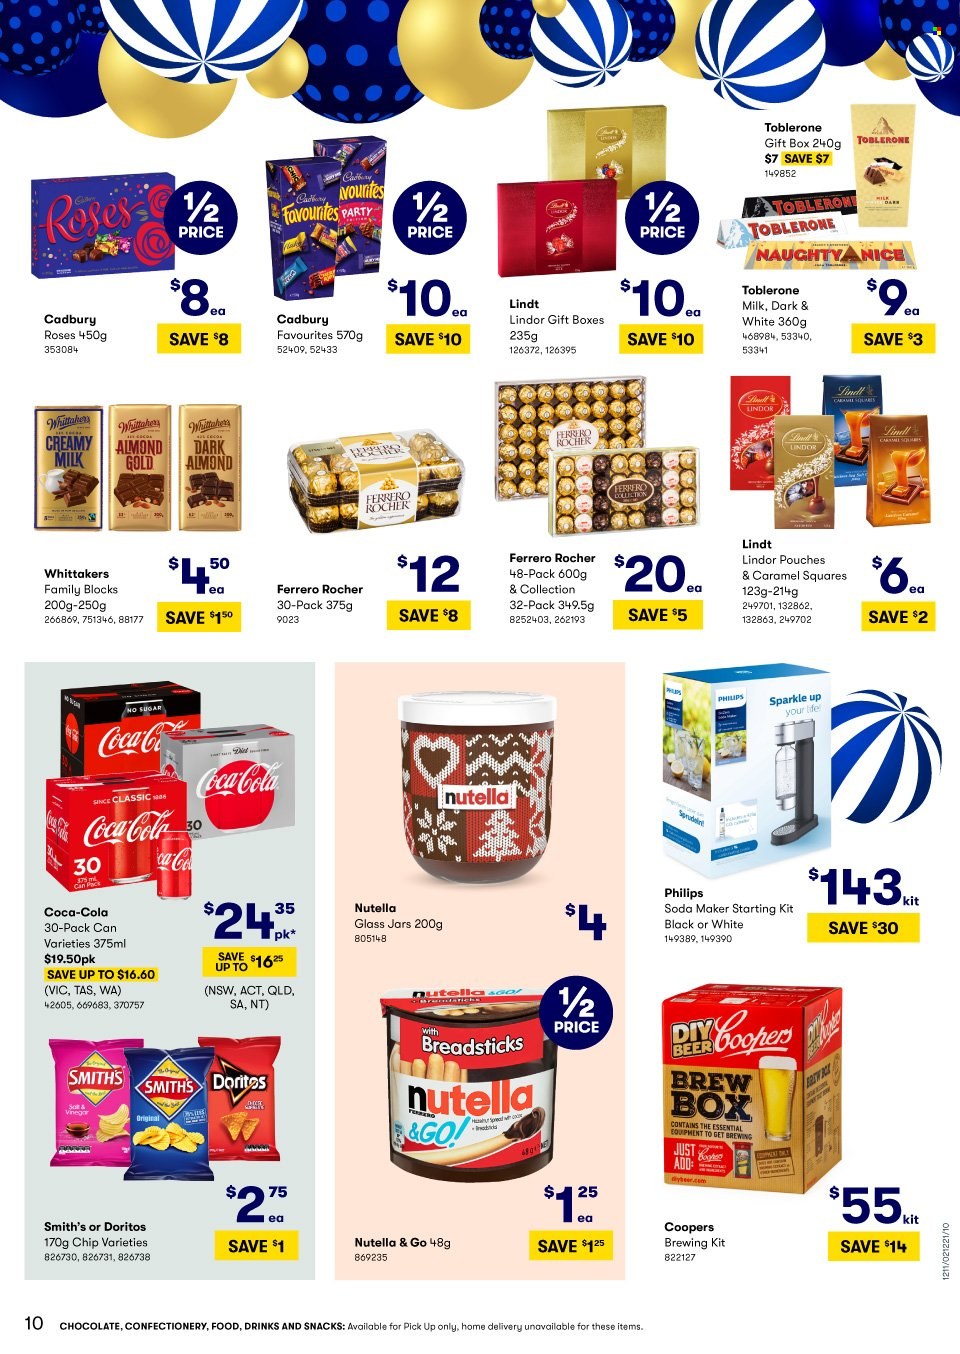 thumbnail - BIG W Catalogue - Sales products - Philips, Nutella, chocolate, Lindt, Lindor, Ferrero Rocher, Toblerone, Cadbury, Cadbury Roses, bread sticks, Doritos, Smith's, Coca-Cola, jar, gift box. Page 10.